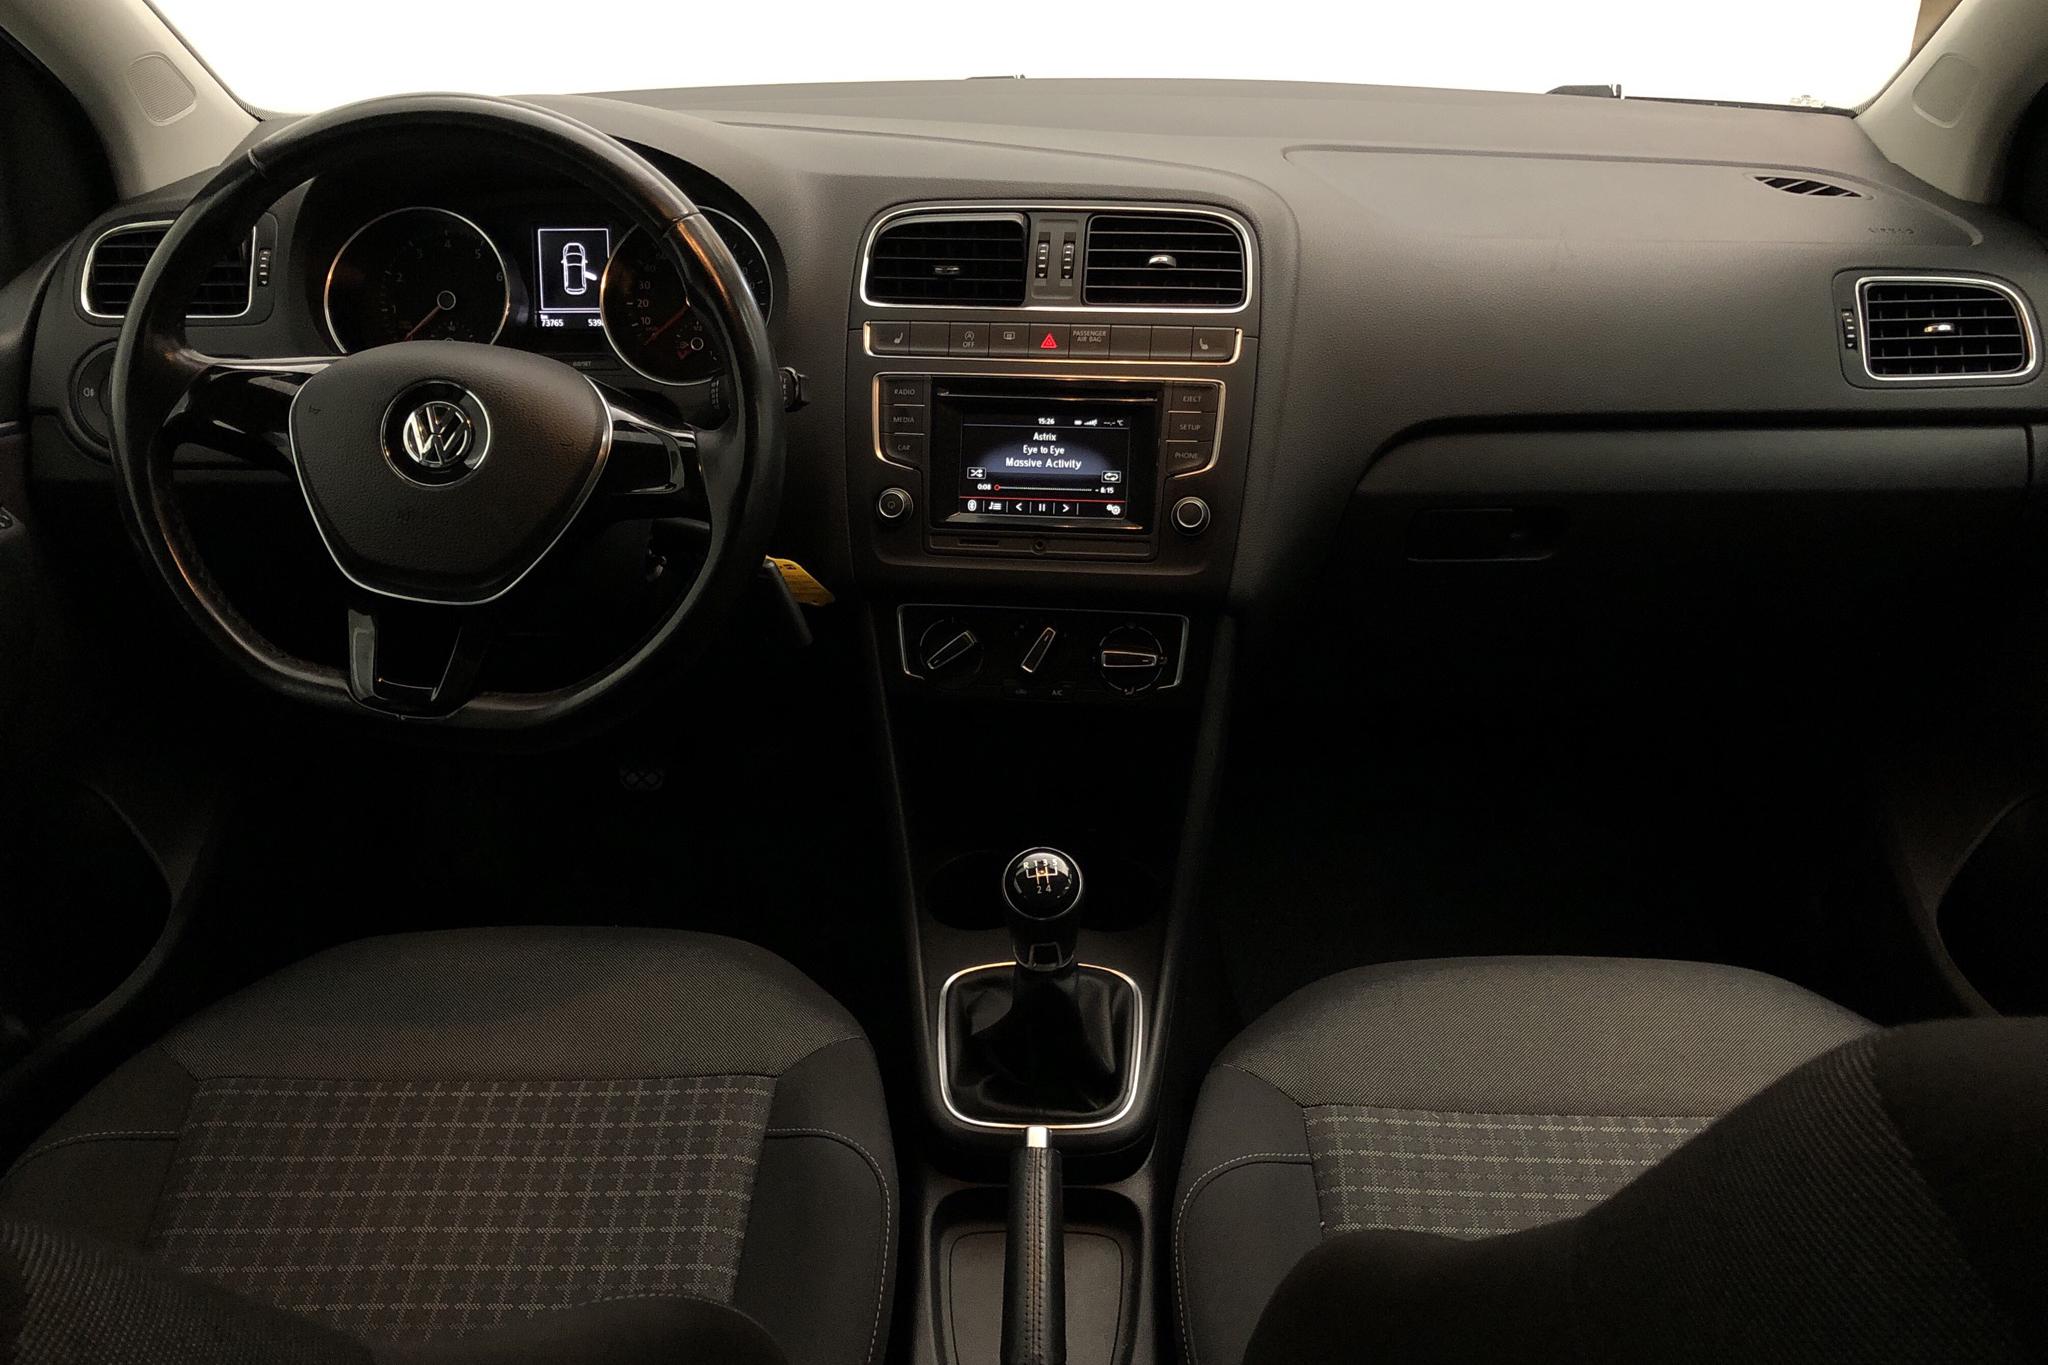 VW Polo 1.2 TSI 5dr (90hk) - 73 770 km - Manual - black - 2016